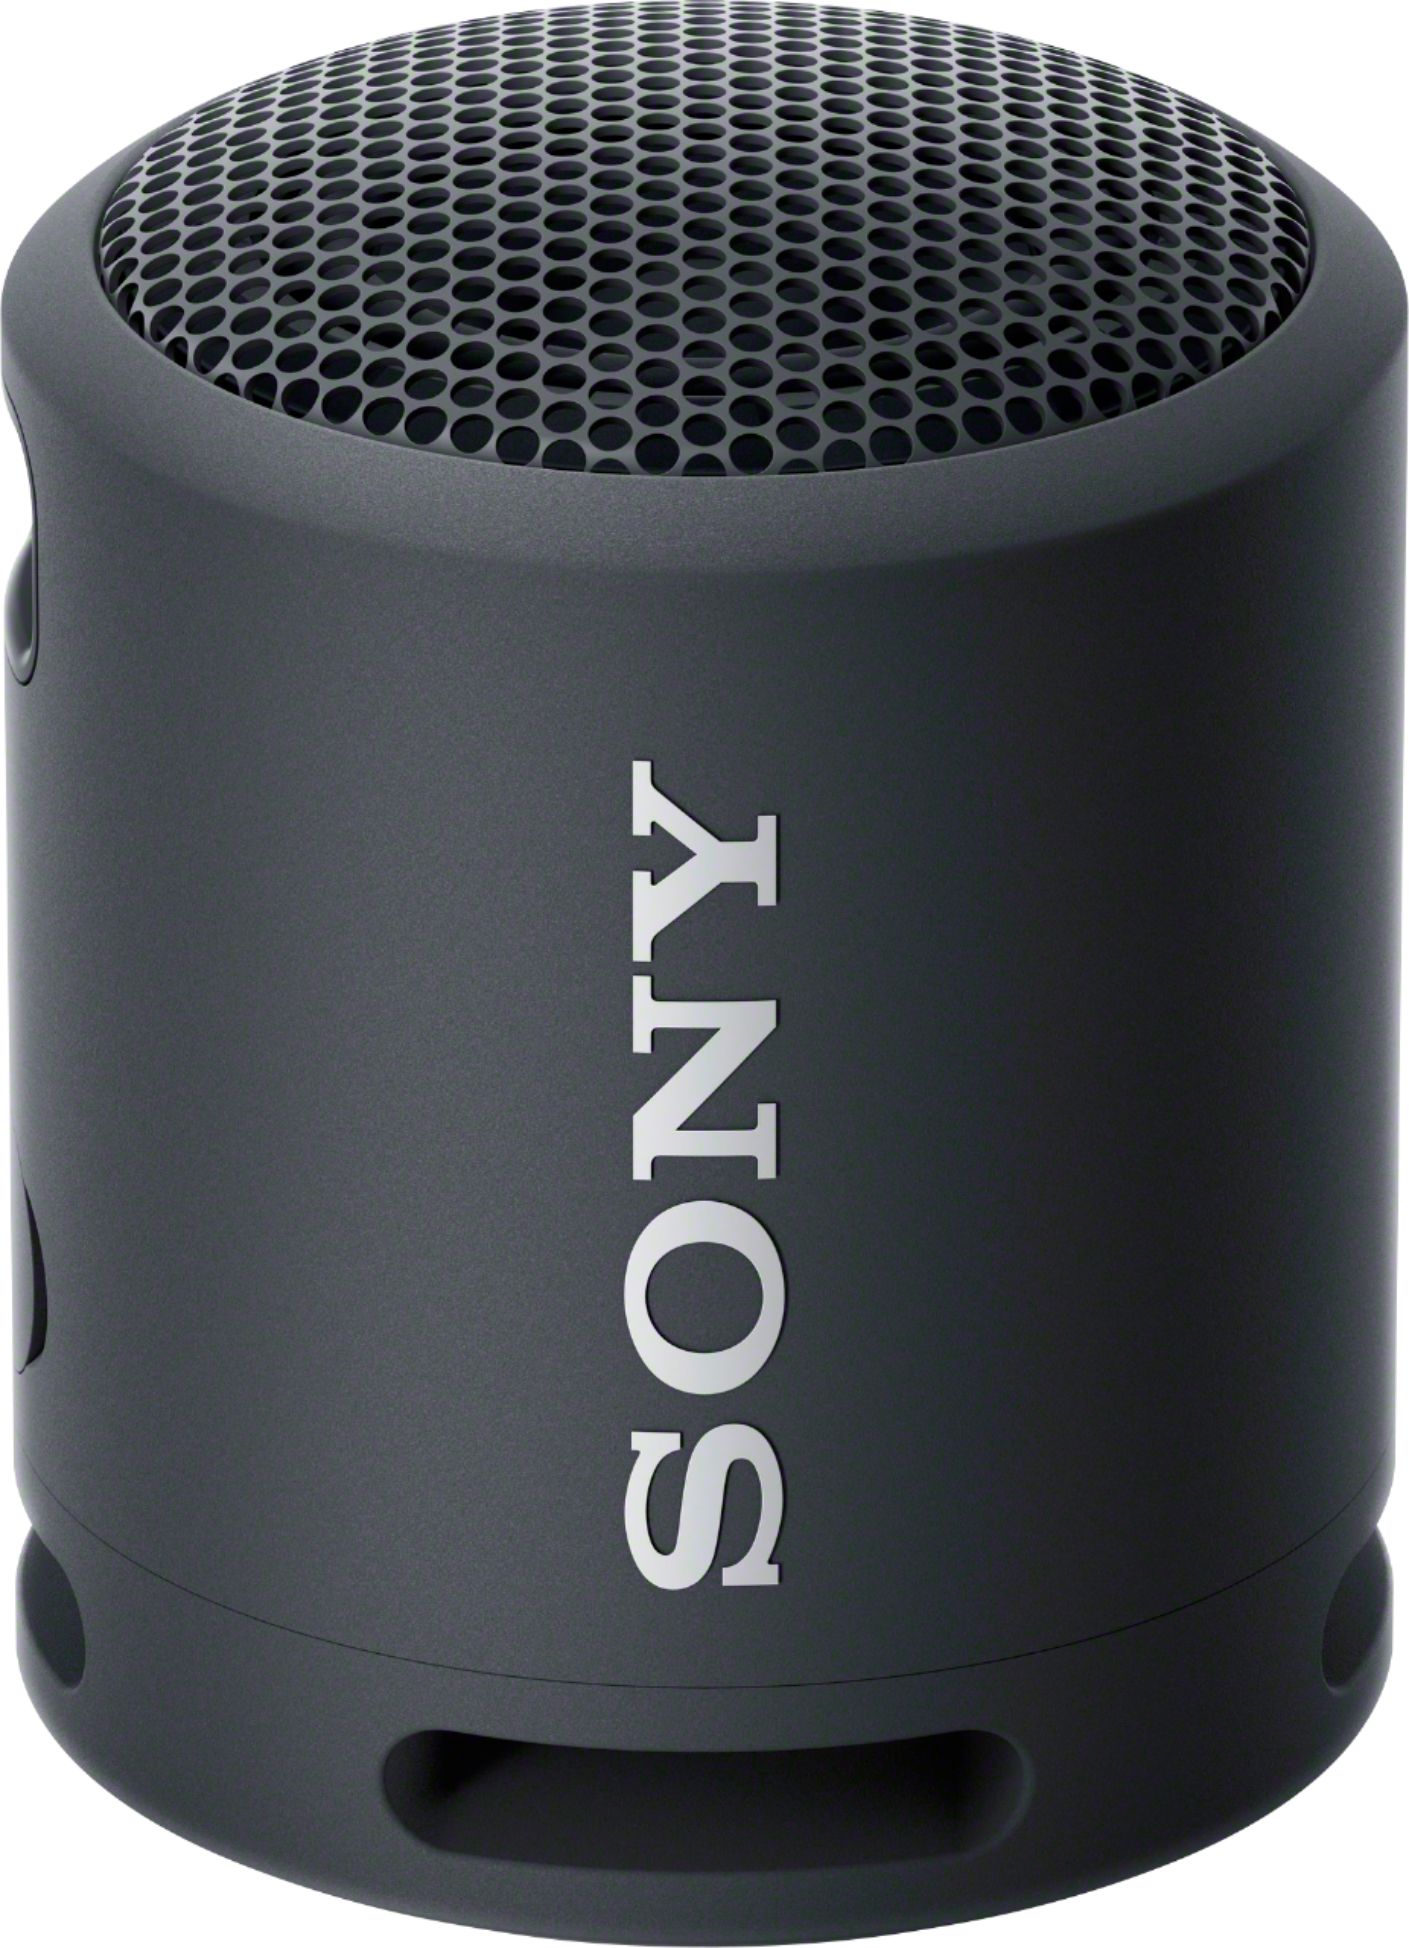 Sony SRS-XB13 EXTRA BASS Wireless Waterproof Speaker - Light Blue